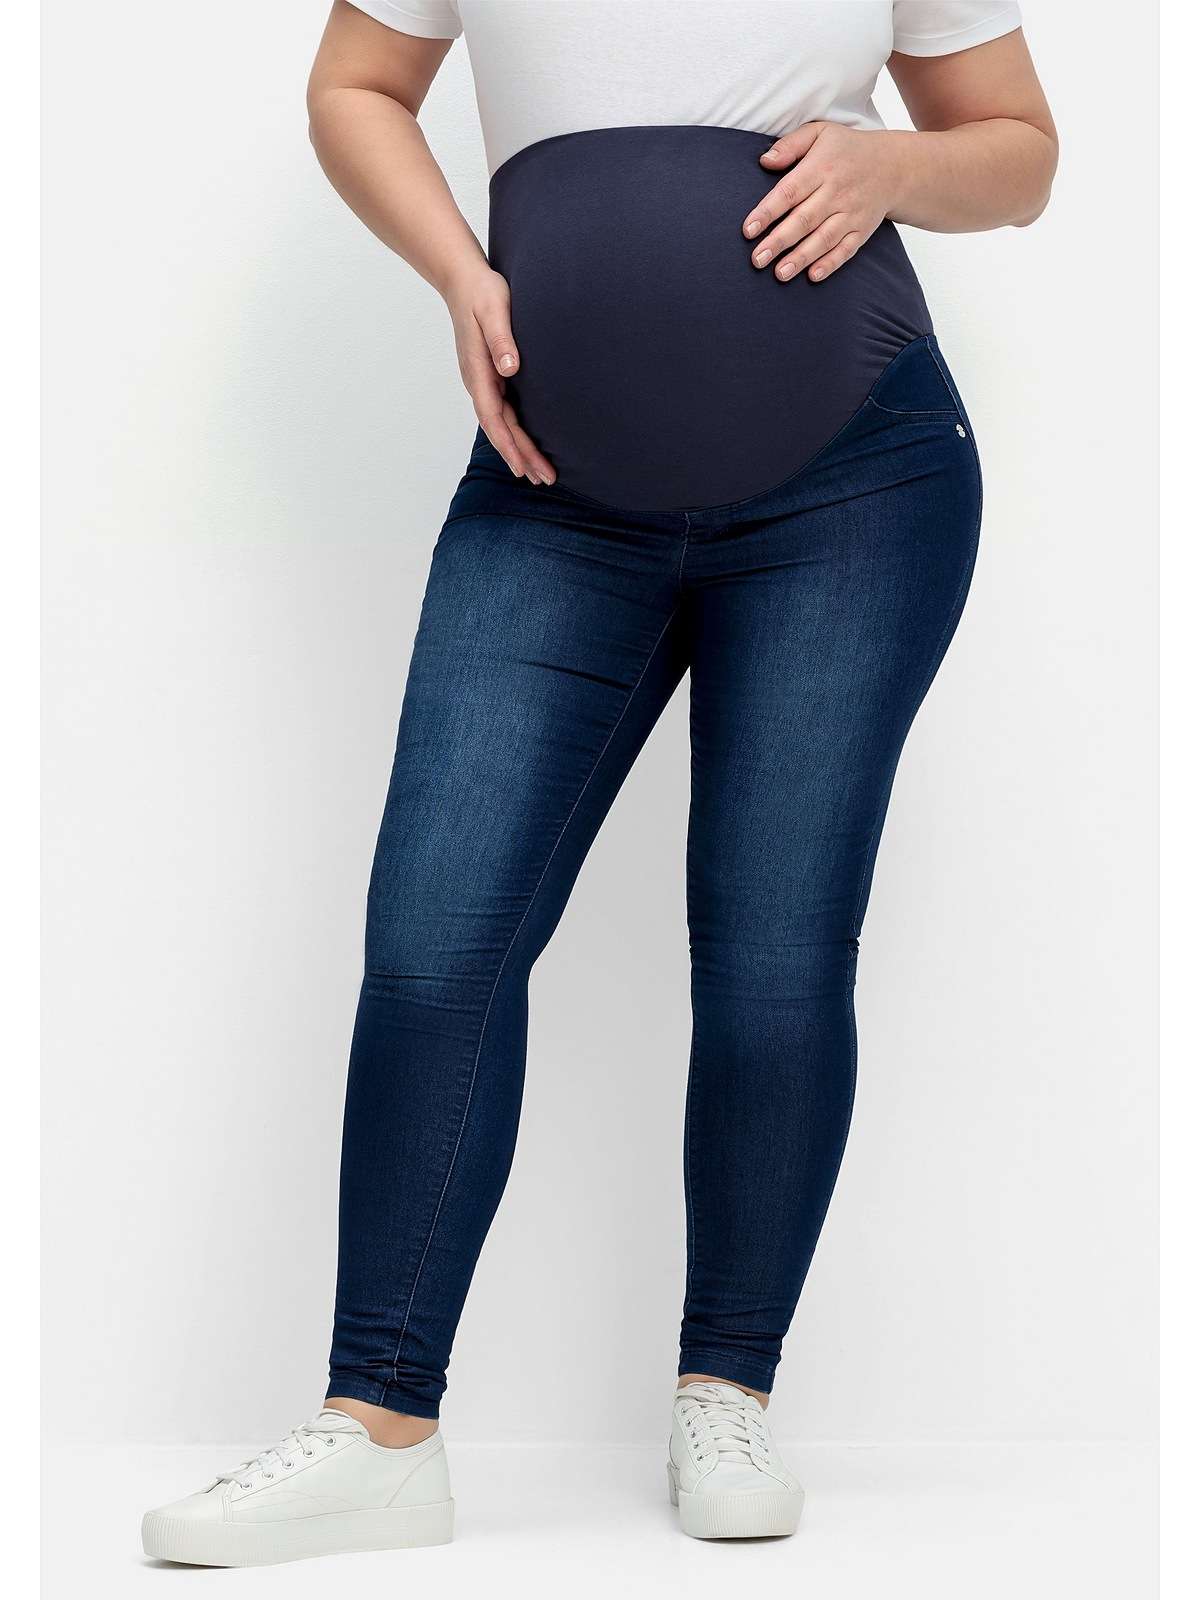 Джинсы для беременных с декоративными передними карманами.